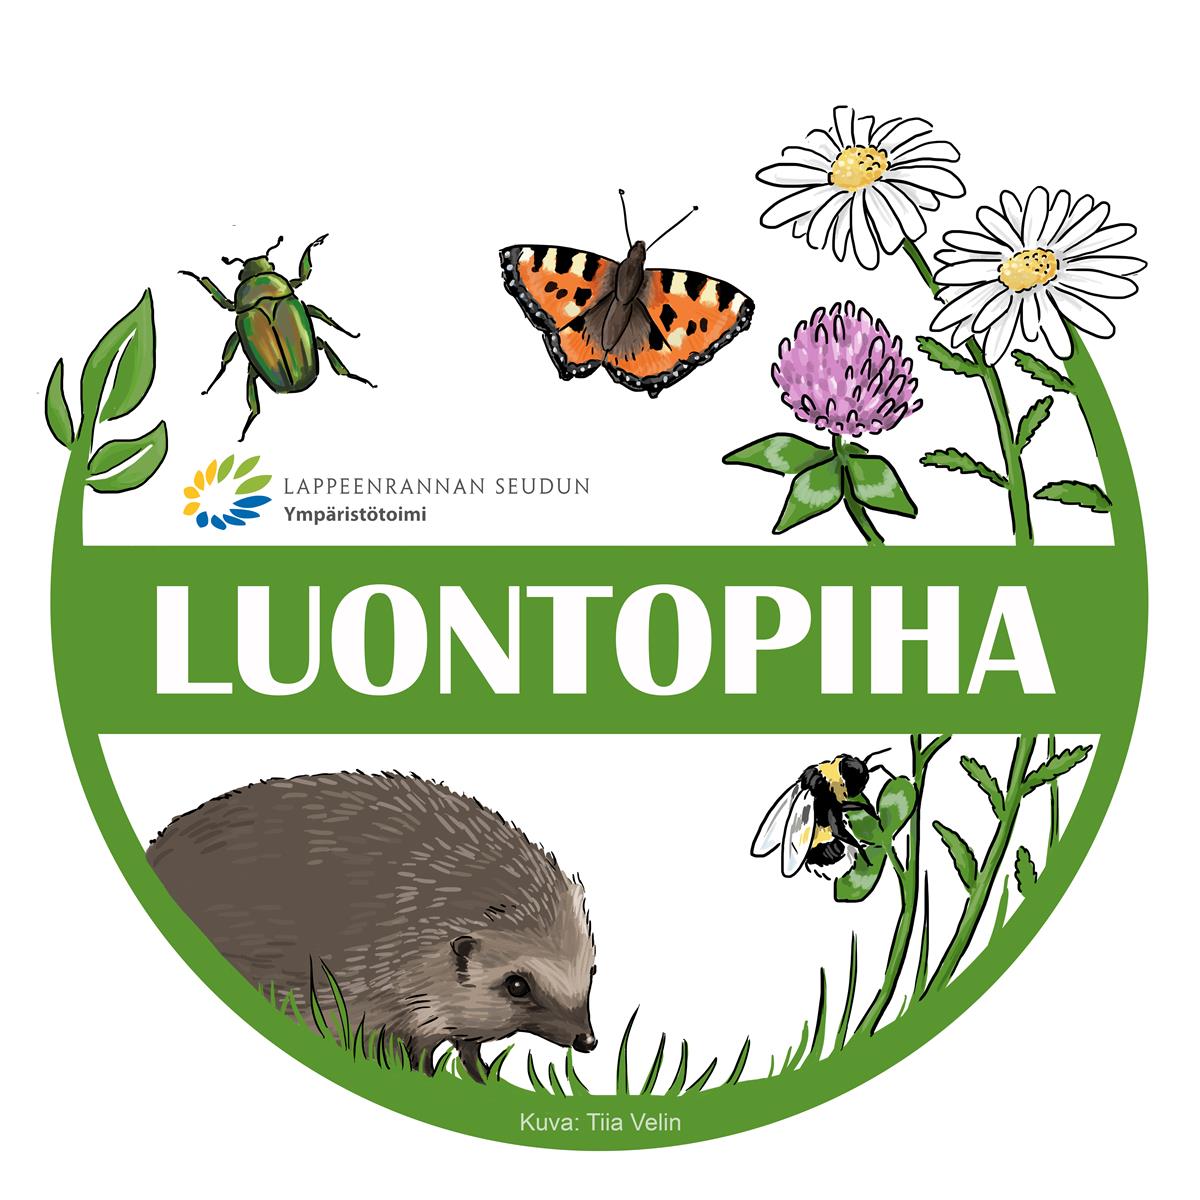 Luontopiha logo(JPG) (Aineisto) (ID 201165).jpg